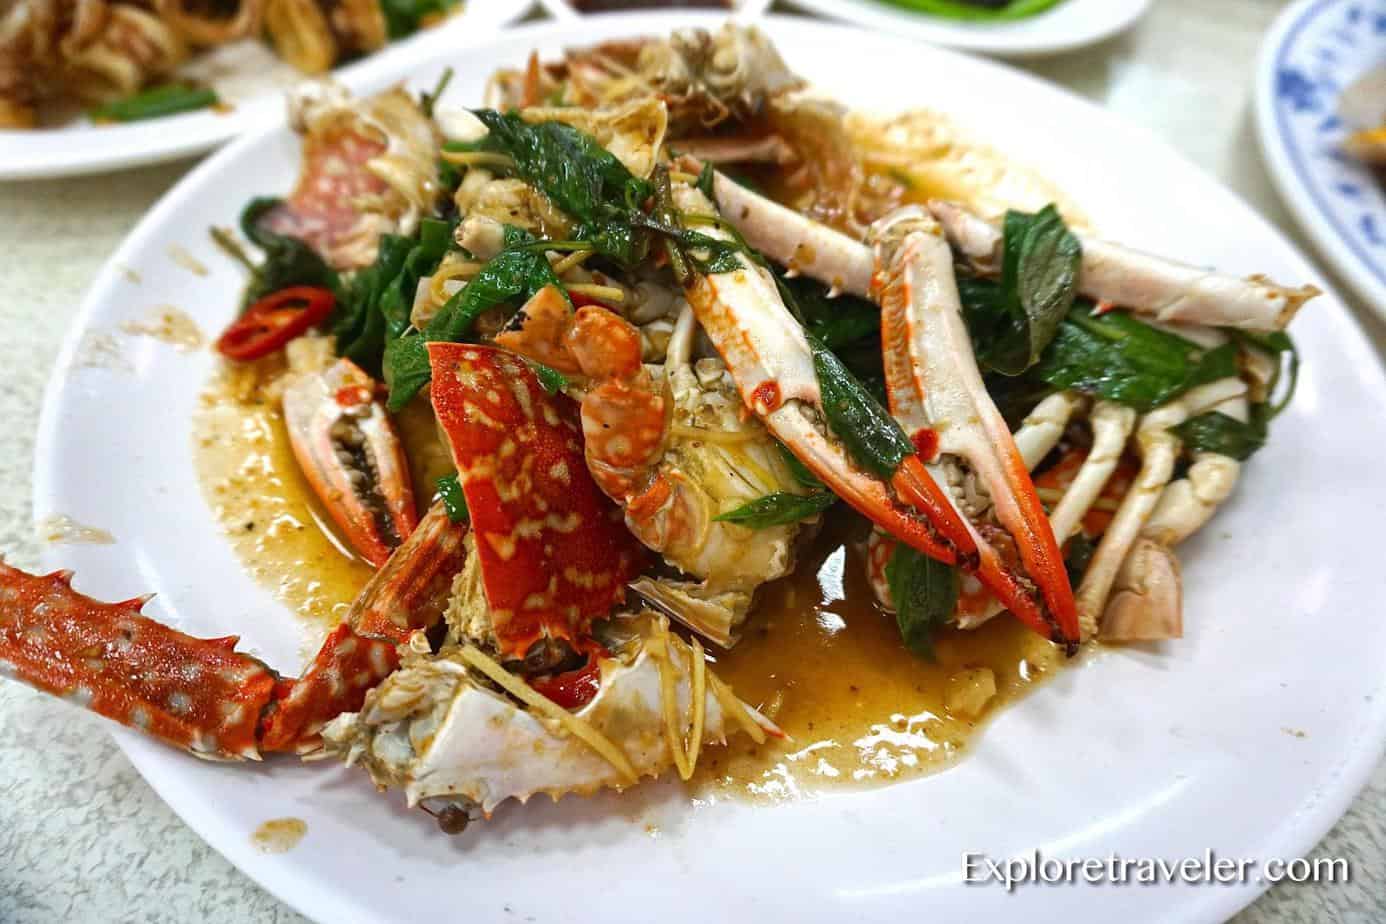 Chili crab sa Taiwan Hindi ka maaaring magkaroon ng sobra